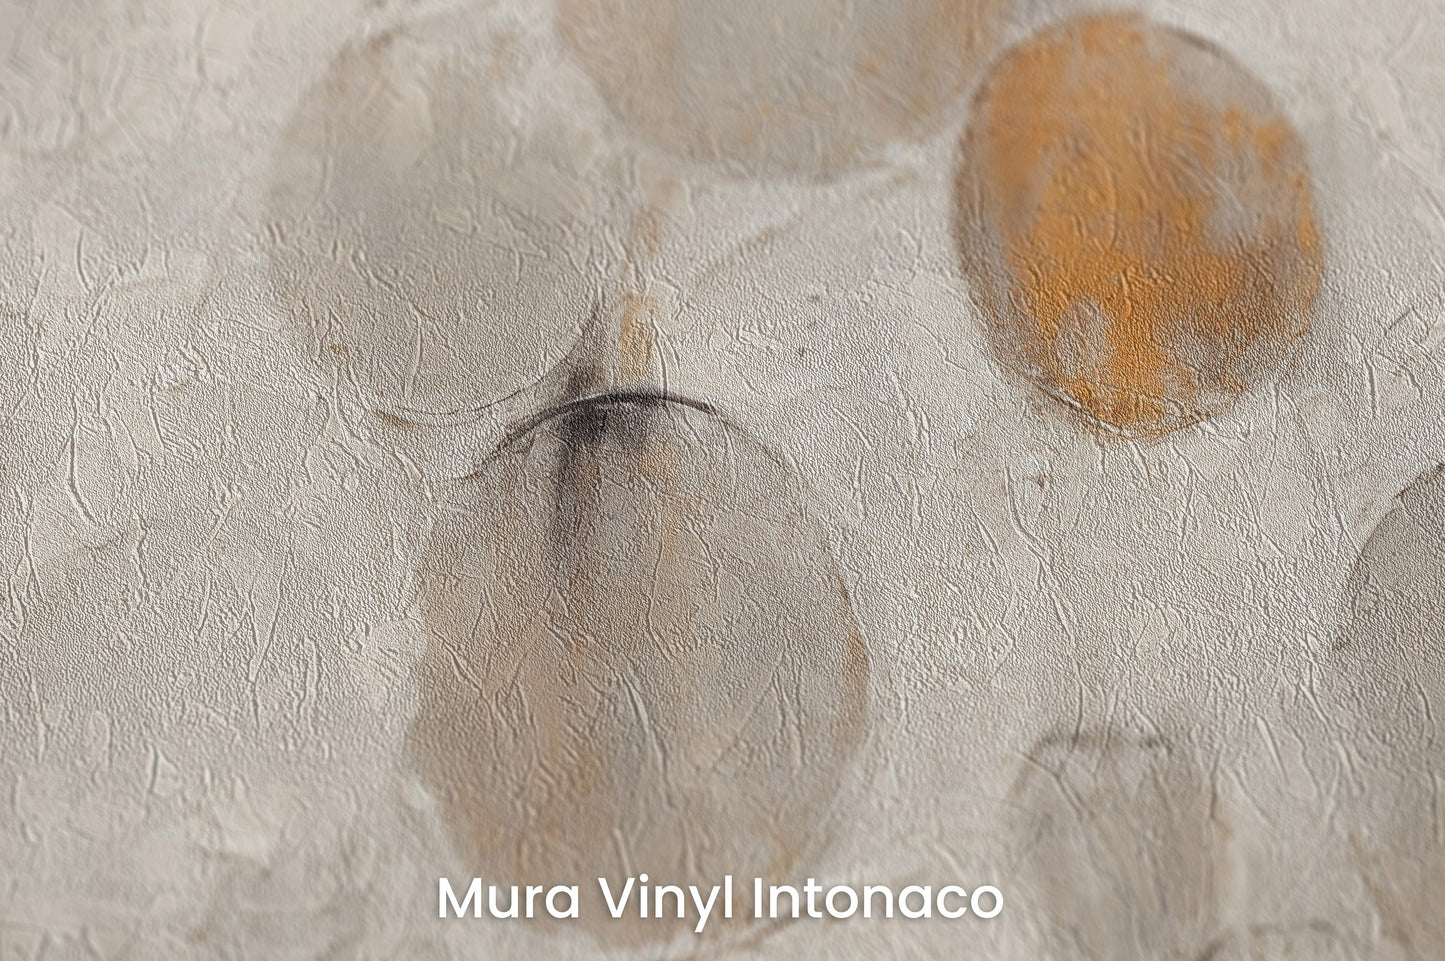 Zbliżenie na artystyczną fototapetę o nazwie RUSTIC ASTRAL SPHERES na podłożu Mura Vinyl Intonaco - struktura tartego tynku.